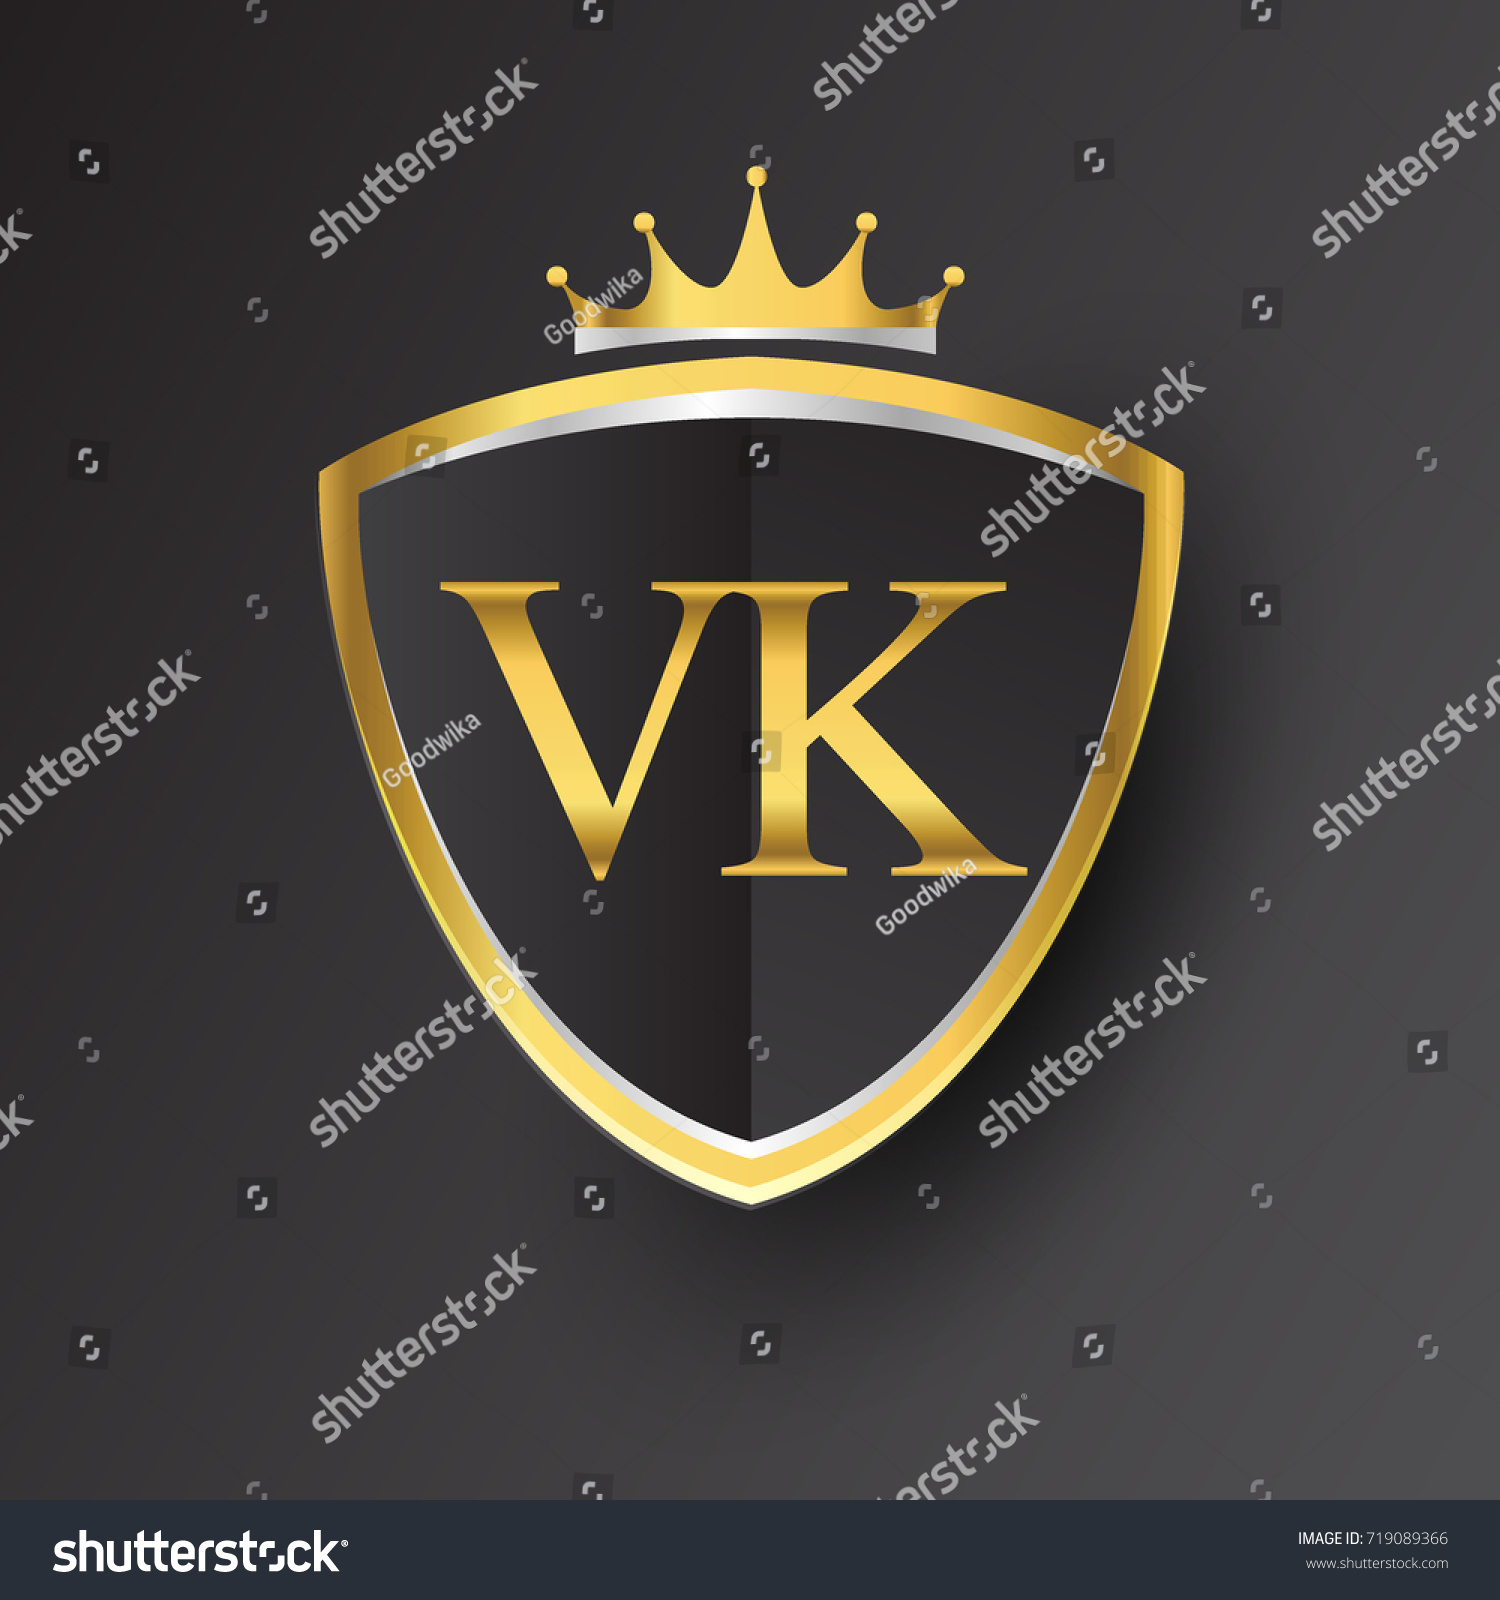 Файл:VK.com-logo.svg — Википедия